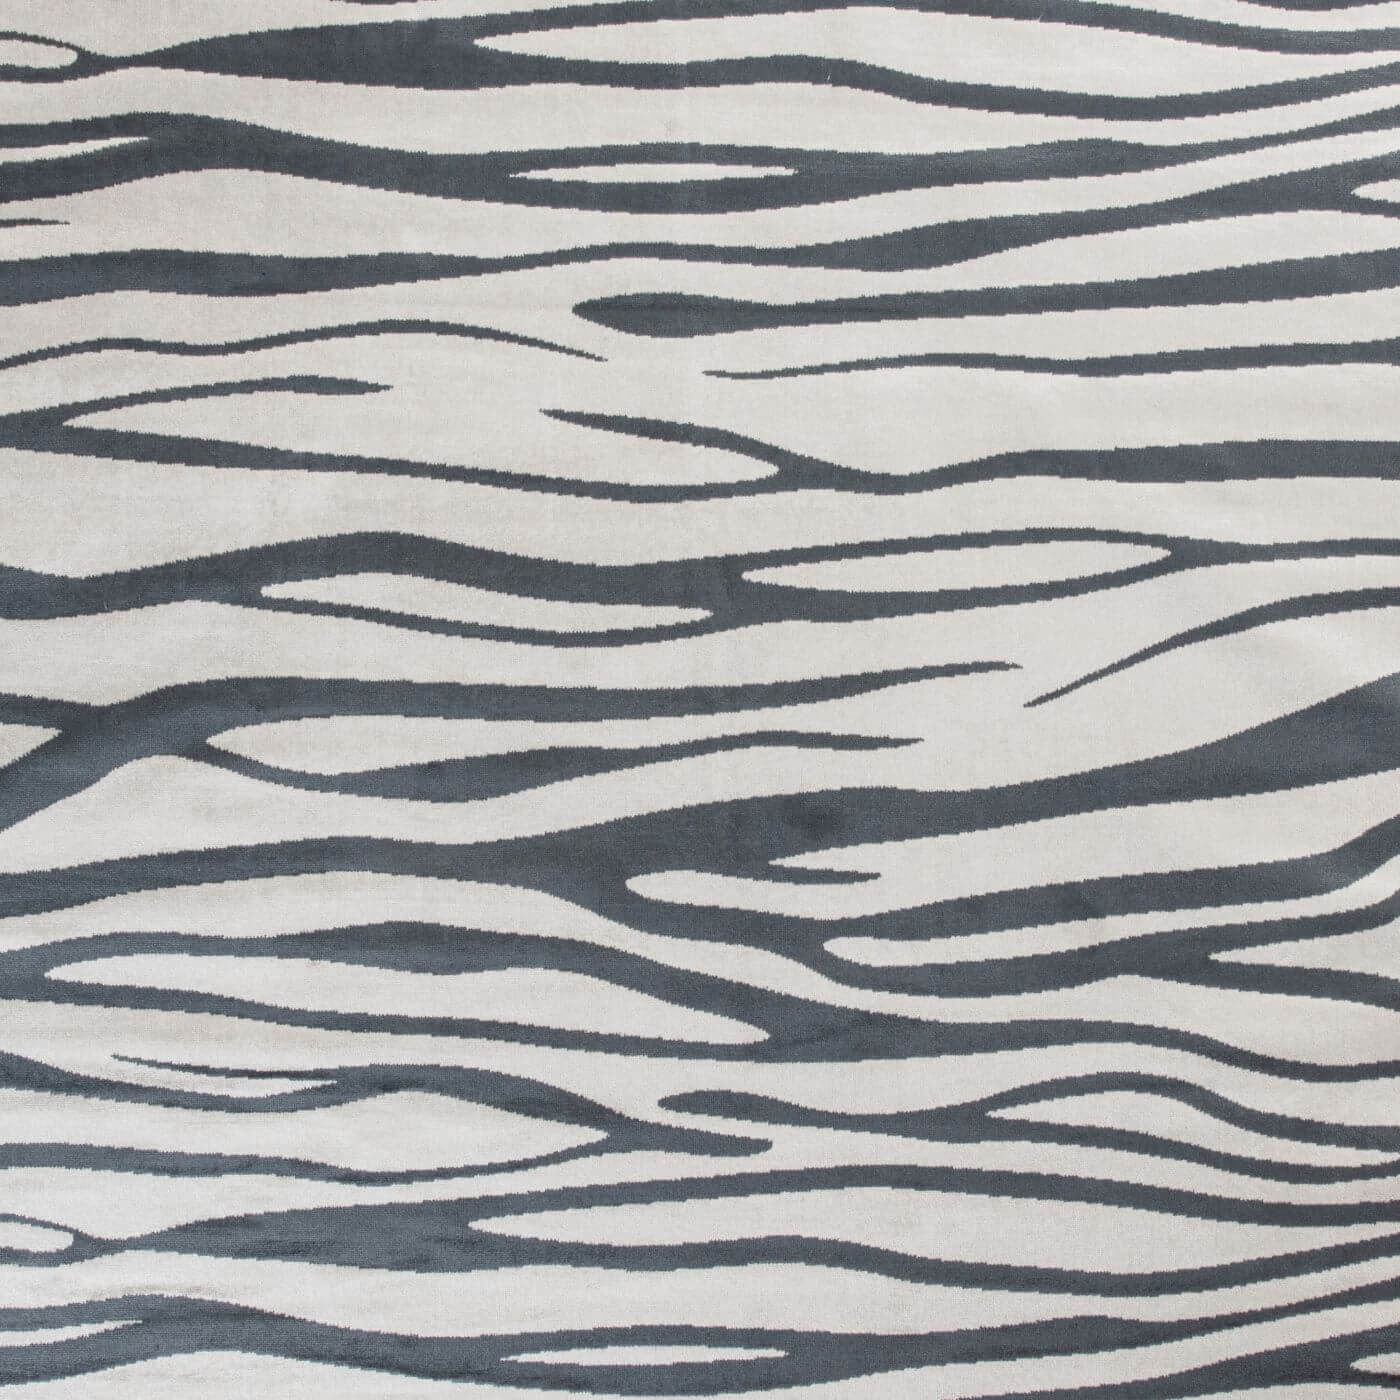 Dywan zebra EBONY. Wzór w nowoczesne nieregularne jasne i ciemno szare pasy. Połysk krótkiego włosia wiskozy. Skandynawskie design